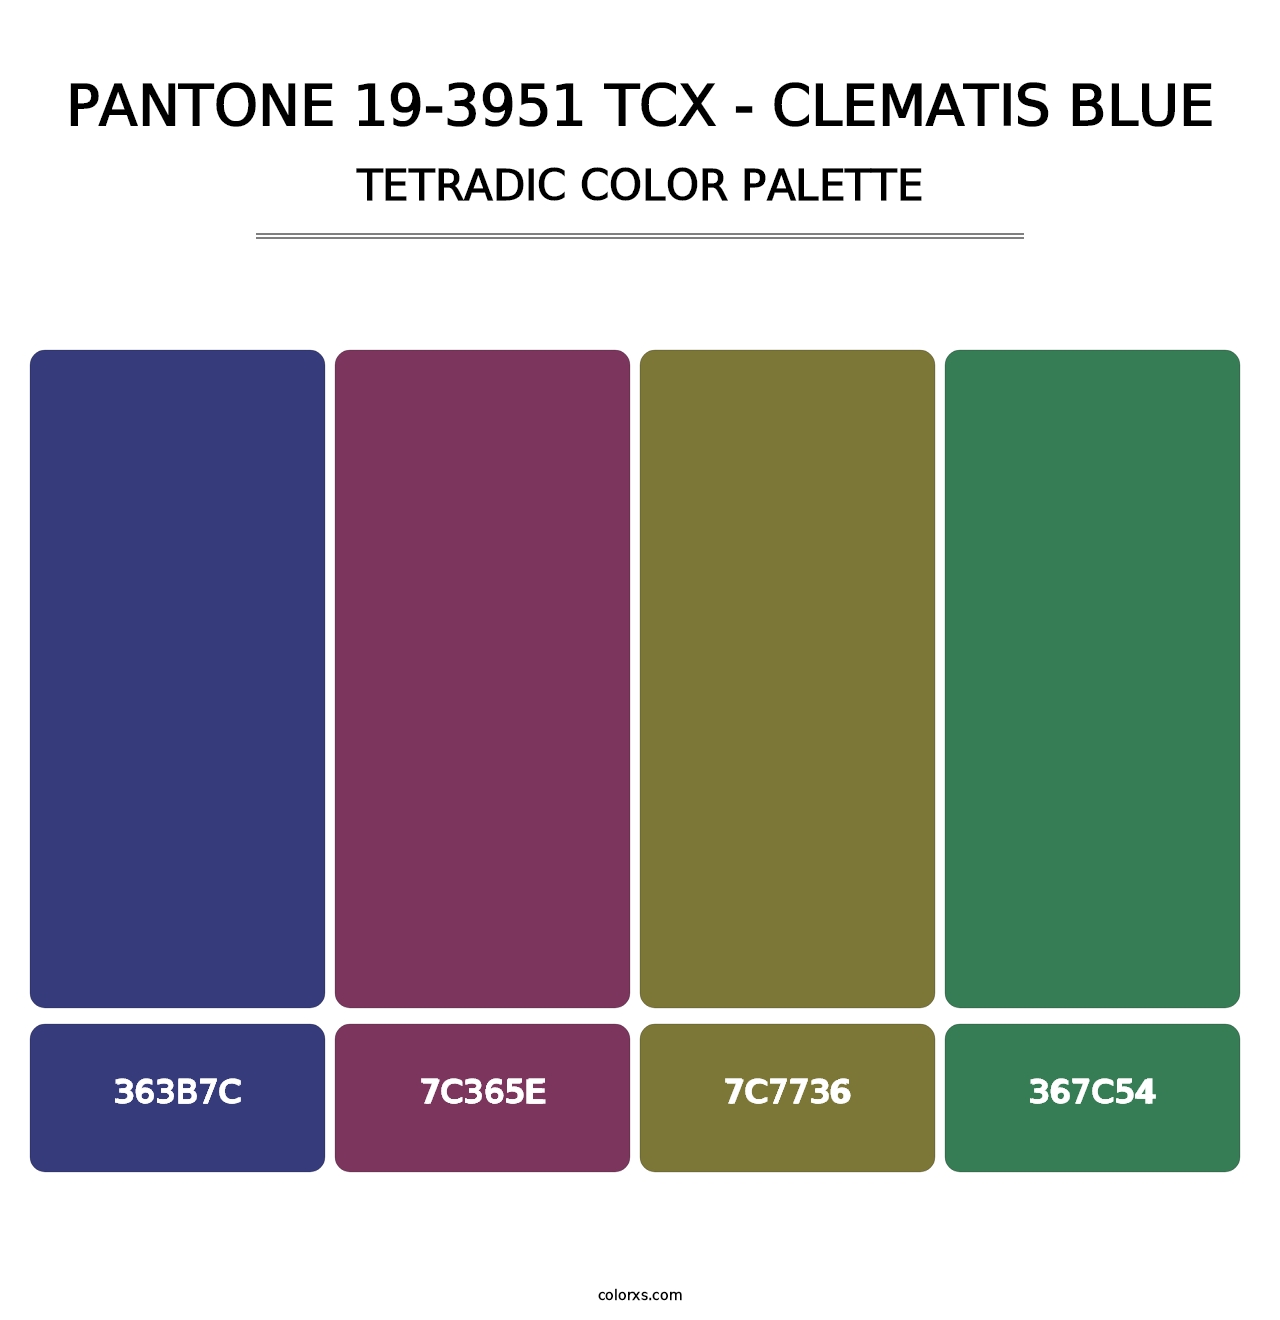 PANTONE 19-3951 TCX - Clematis Blue - Tetradic Color Palette